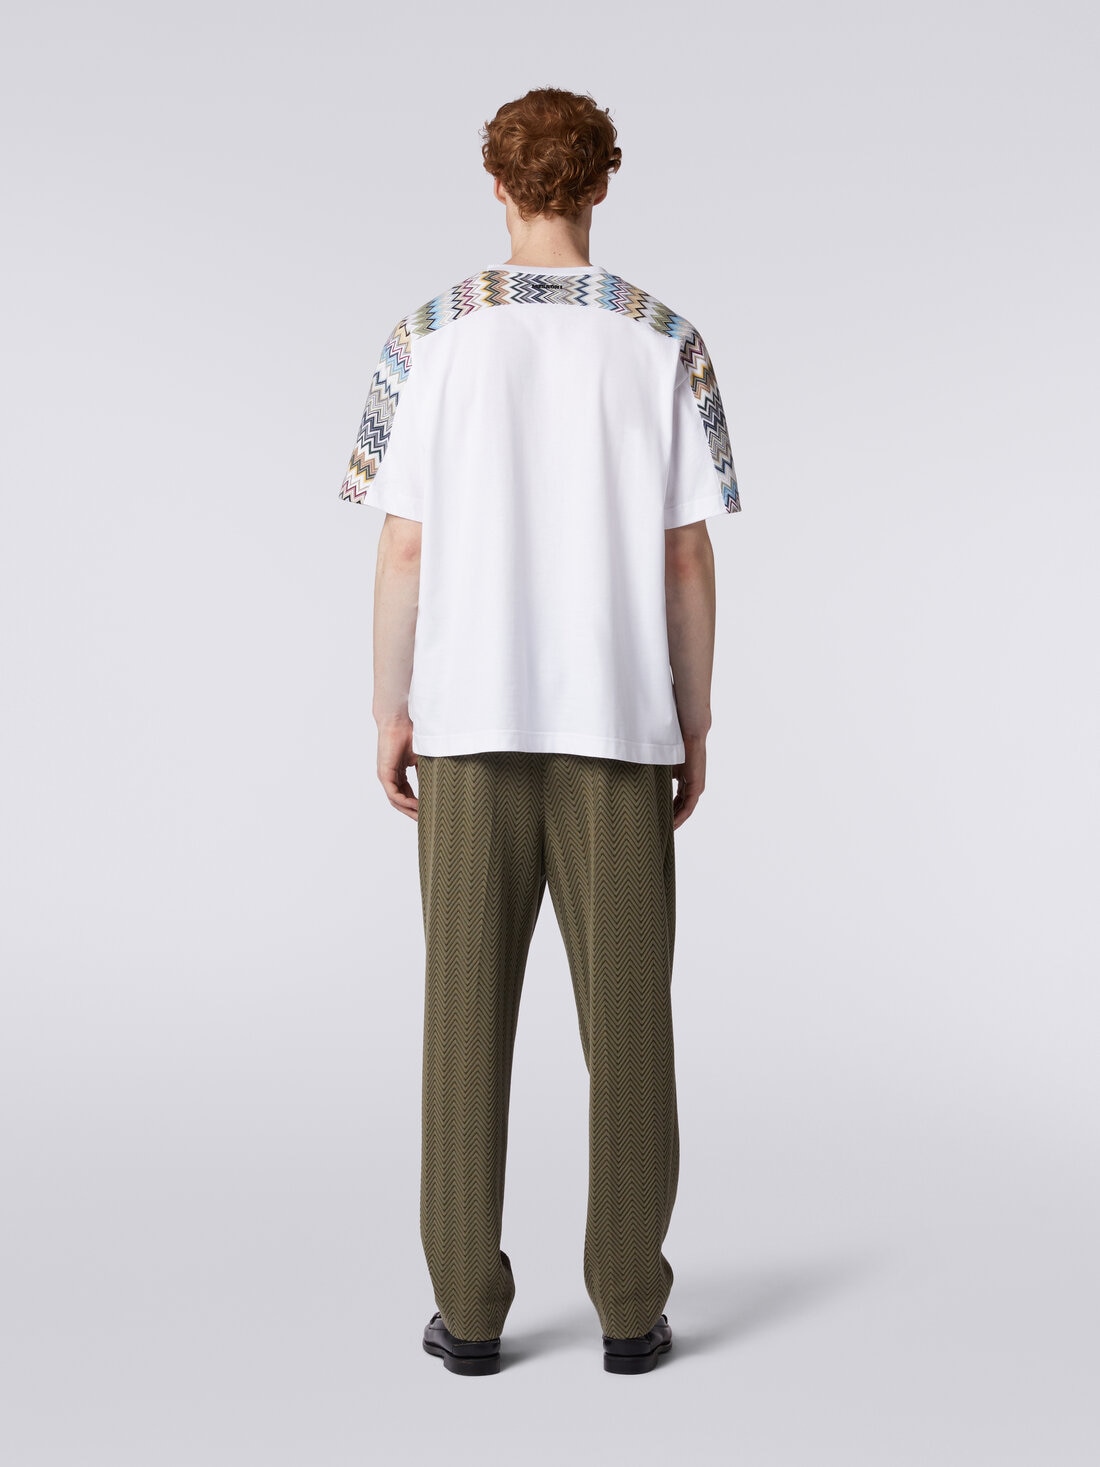 Camiseta de algodón con inserciones zigzag, Multicolor  - US24SL08BJ00IKS01AY - 3